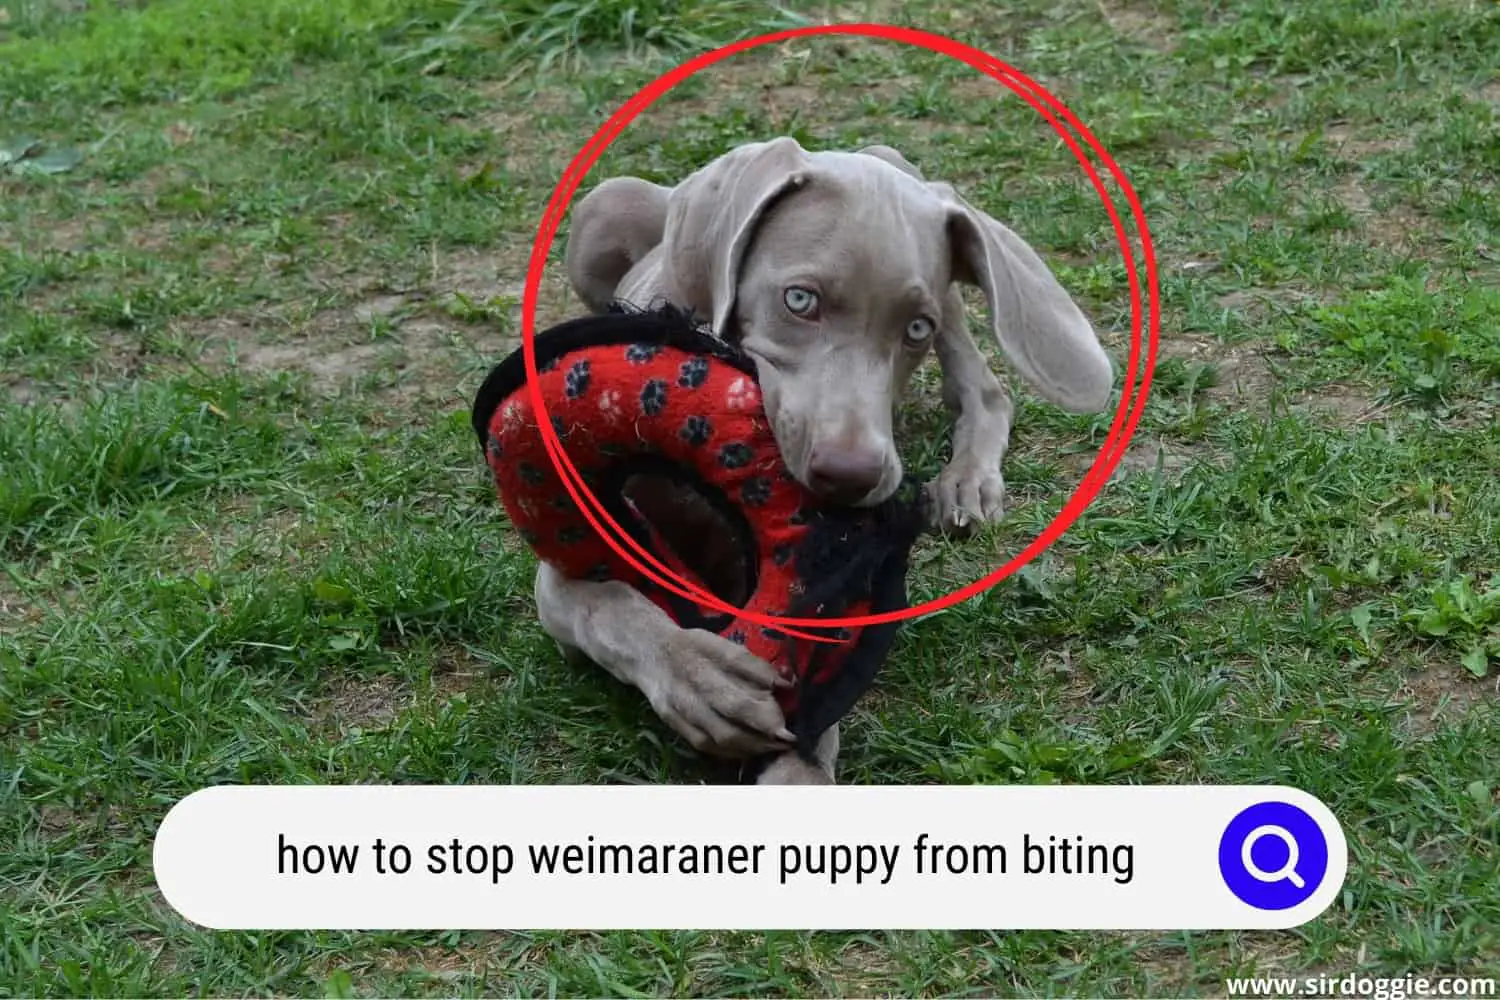 weimaraner puppy biting fetch toy